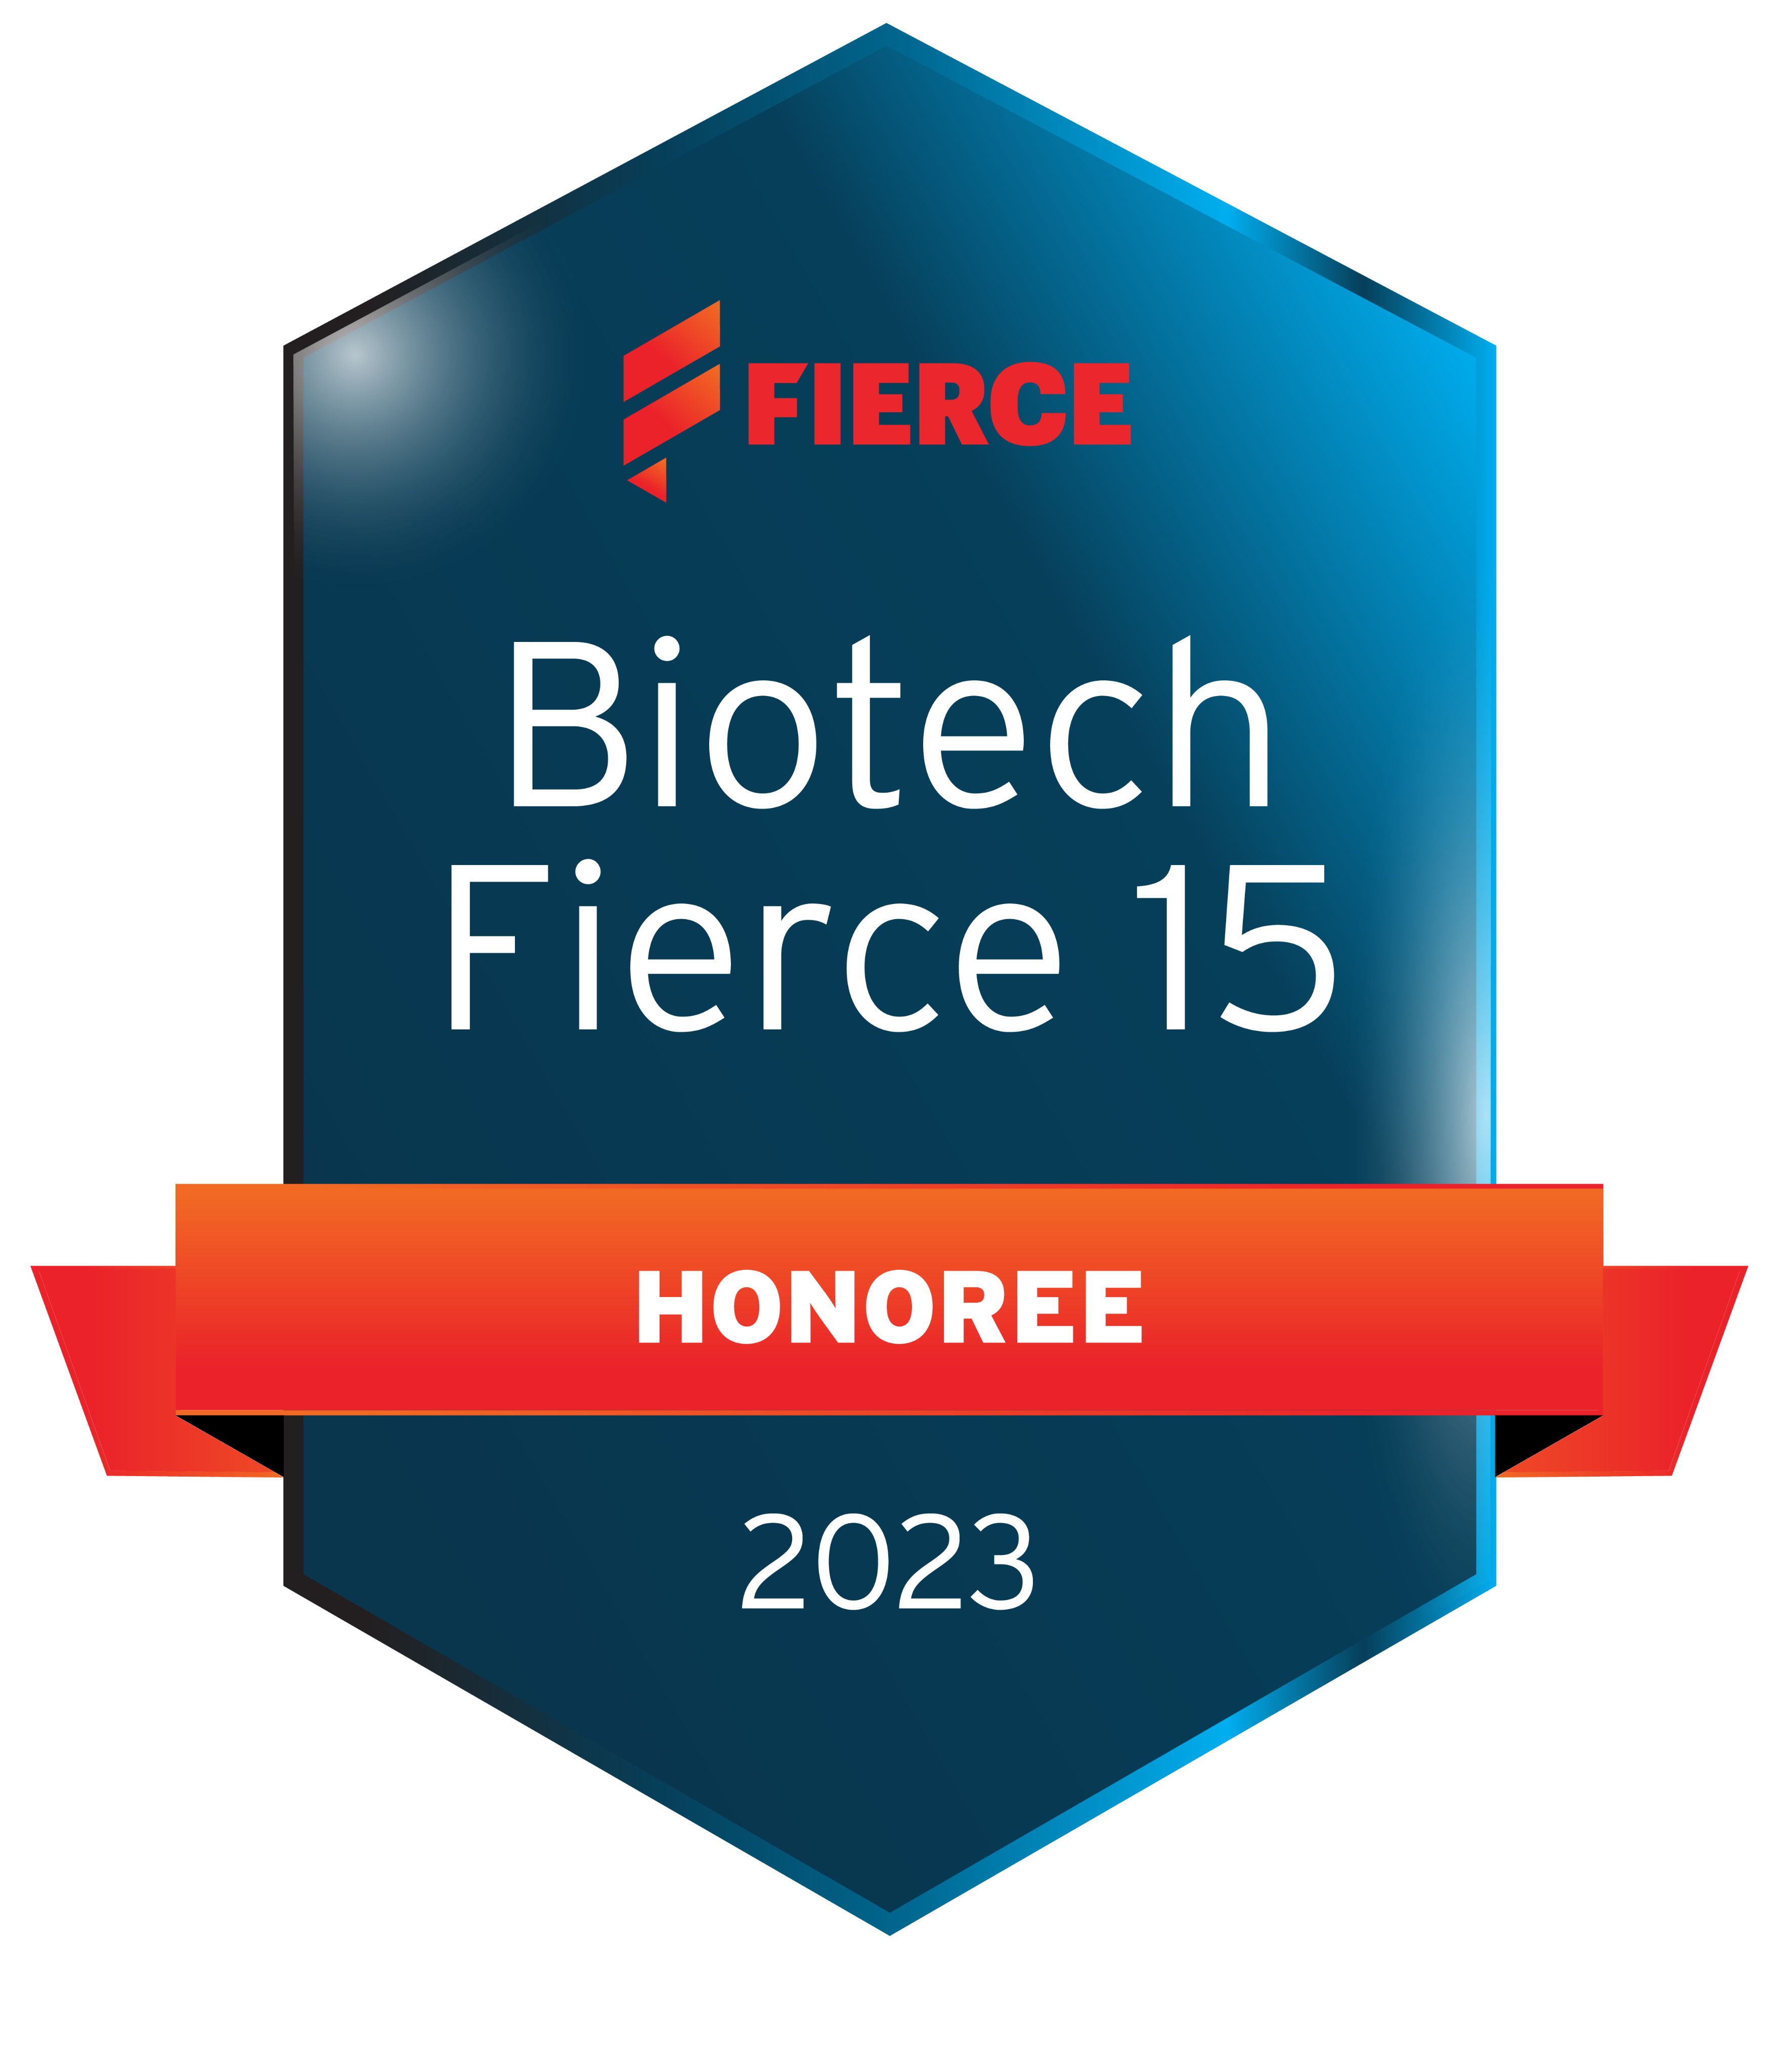 FierceBiotech's 2019 Fierce 15